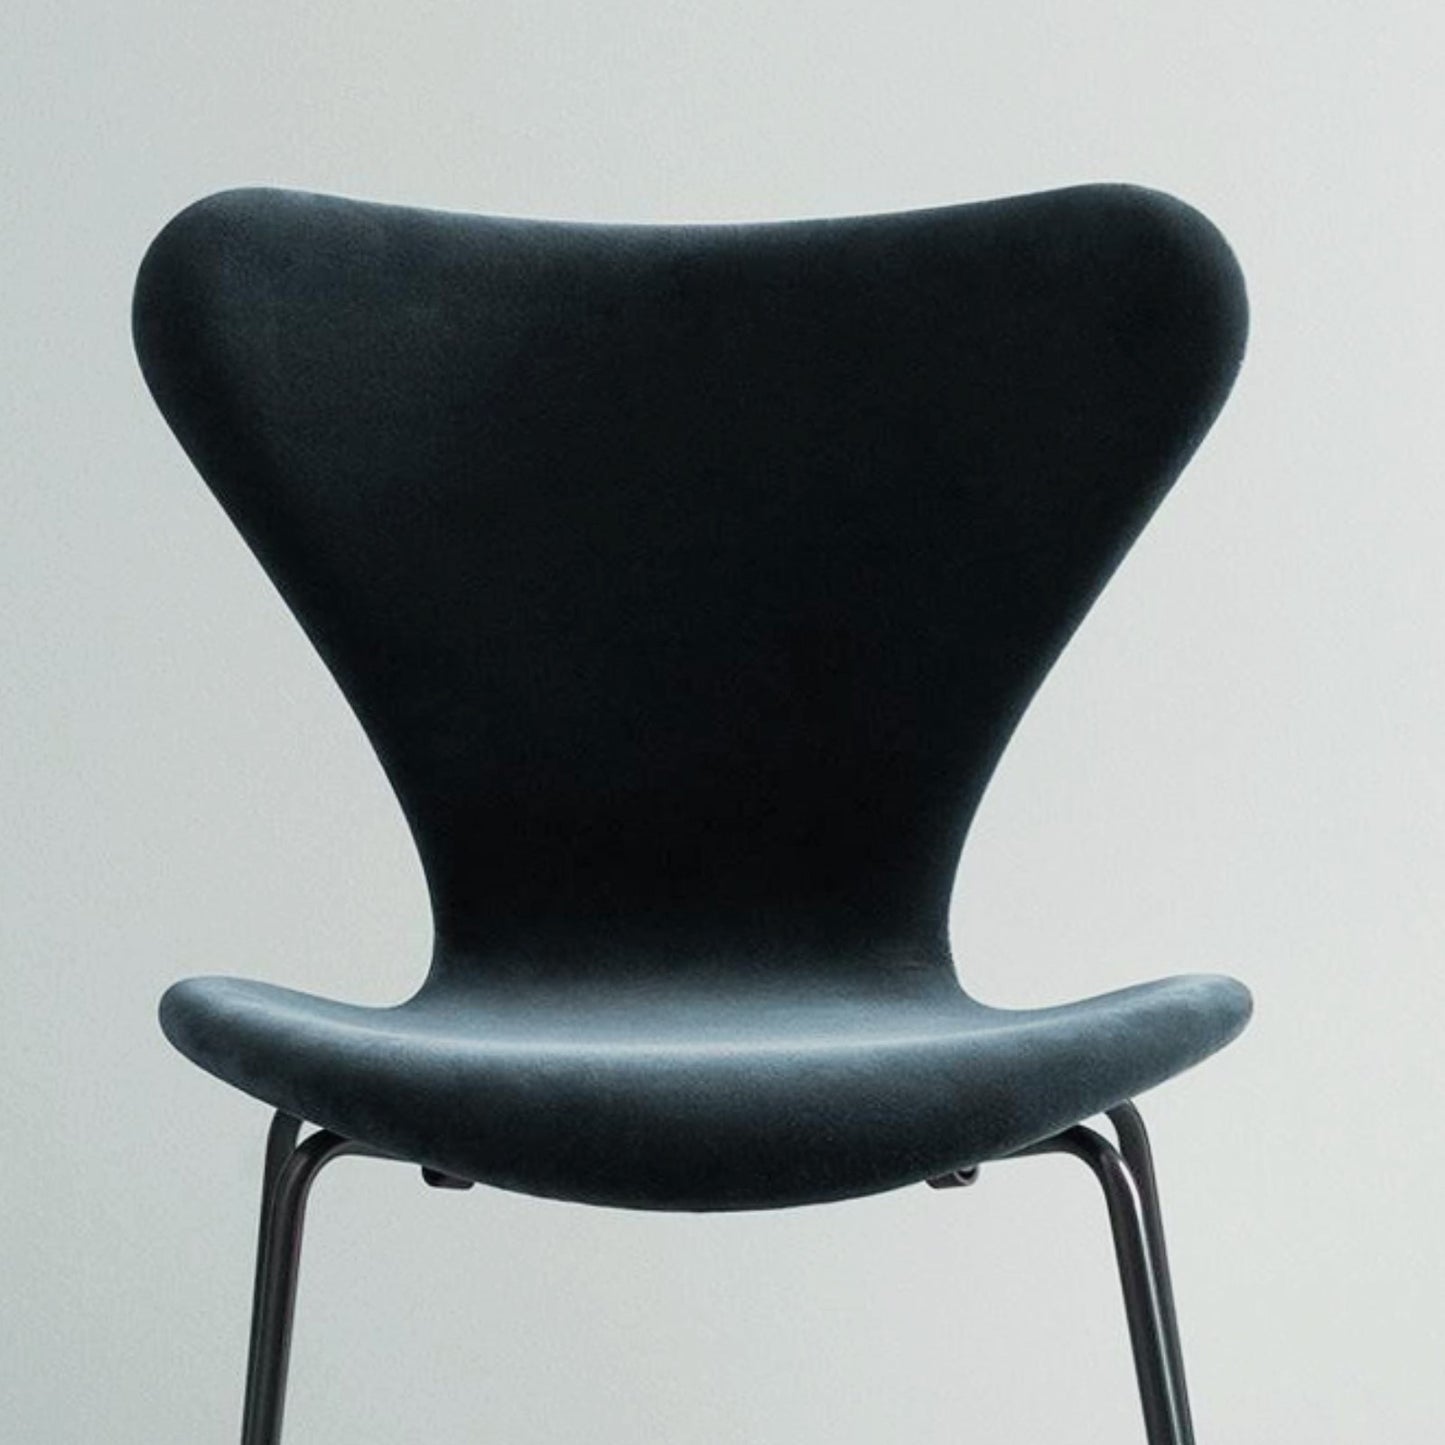 Chaise bleue rembourrée aspect velours au design contemporain et pieds en métal